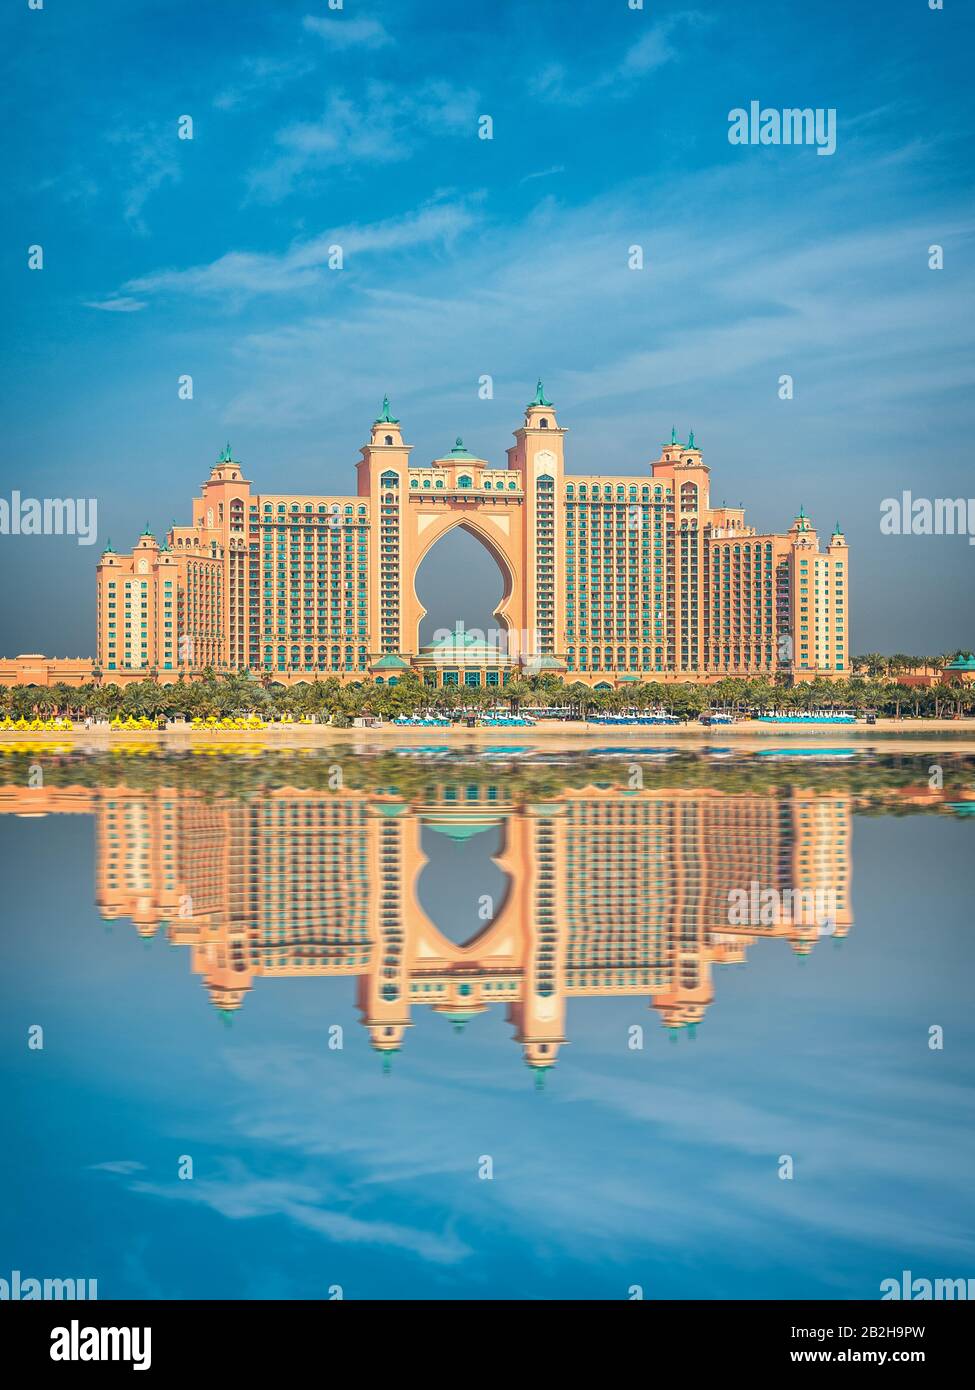 Vue imprenable sur Atlantis Resort, Hotel & Theme Park sur l'île de Palm Jumeirah, vue de la Pointe Dubai, Emirats Arabes Unis. Inspiration voyage de luxe. Banque D'Images